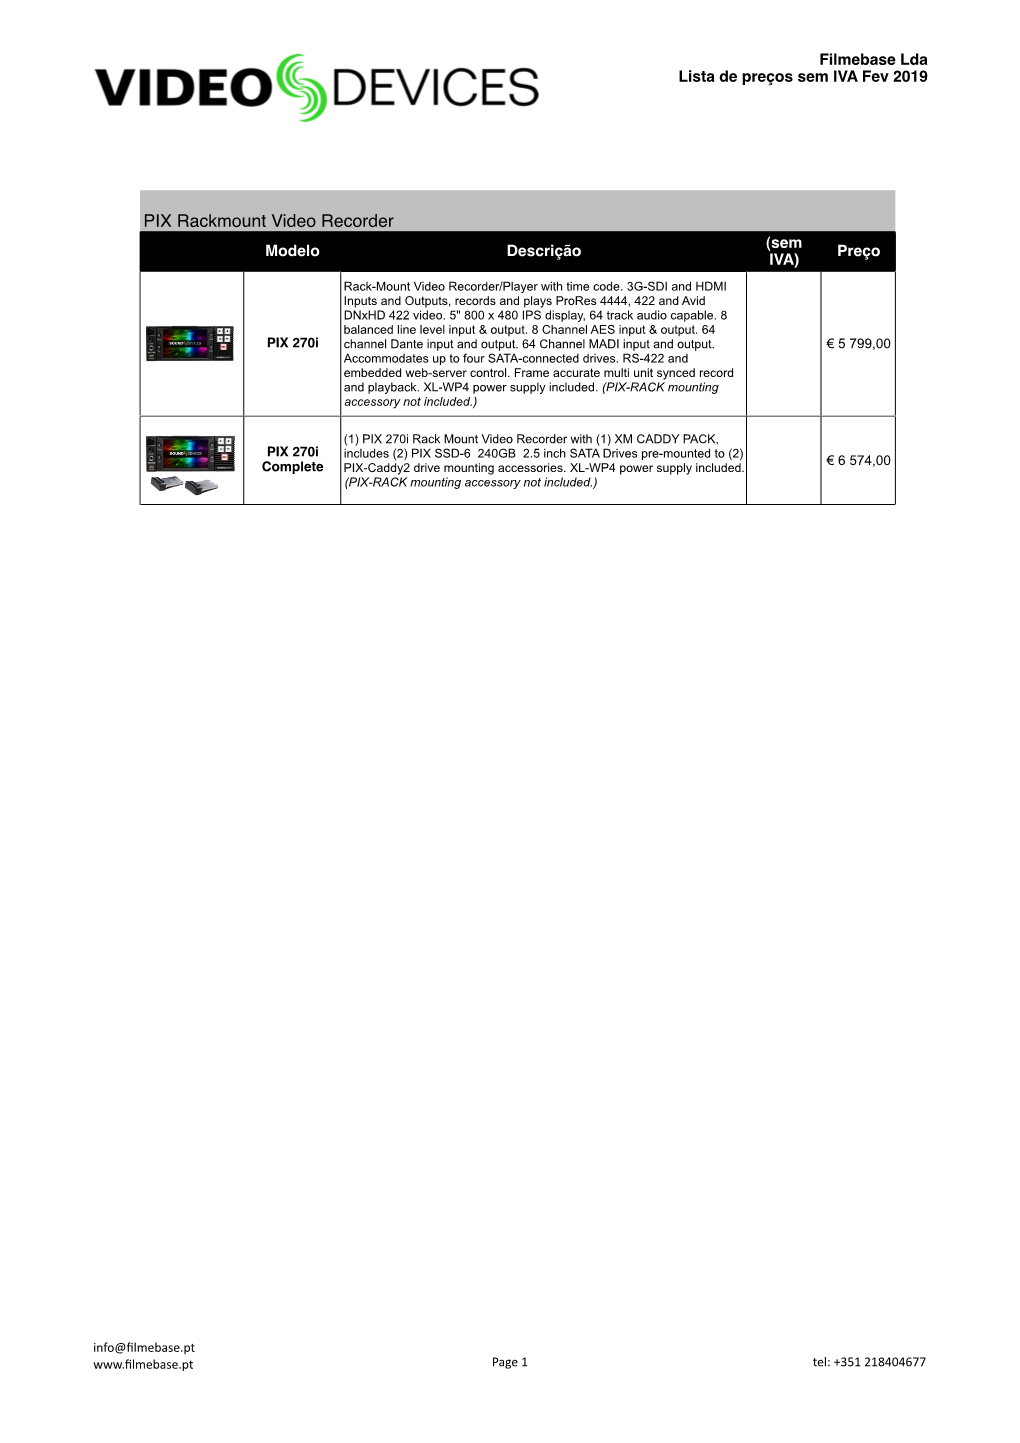 PIX Rackmount Video Recorder (Sem Modelo Descrição Preço IVA)